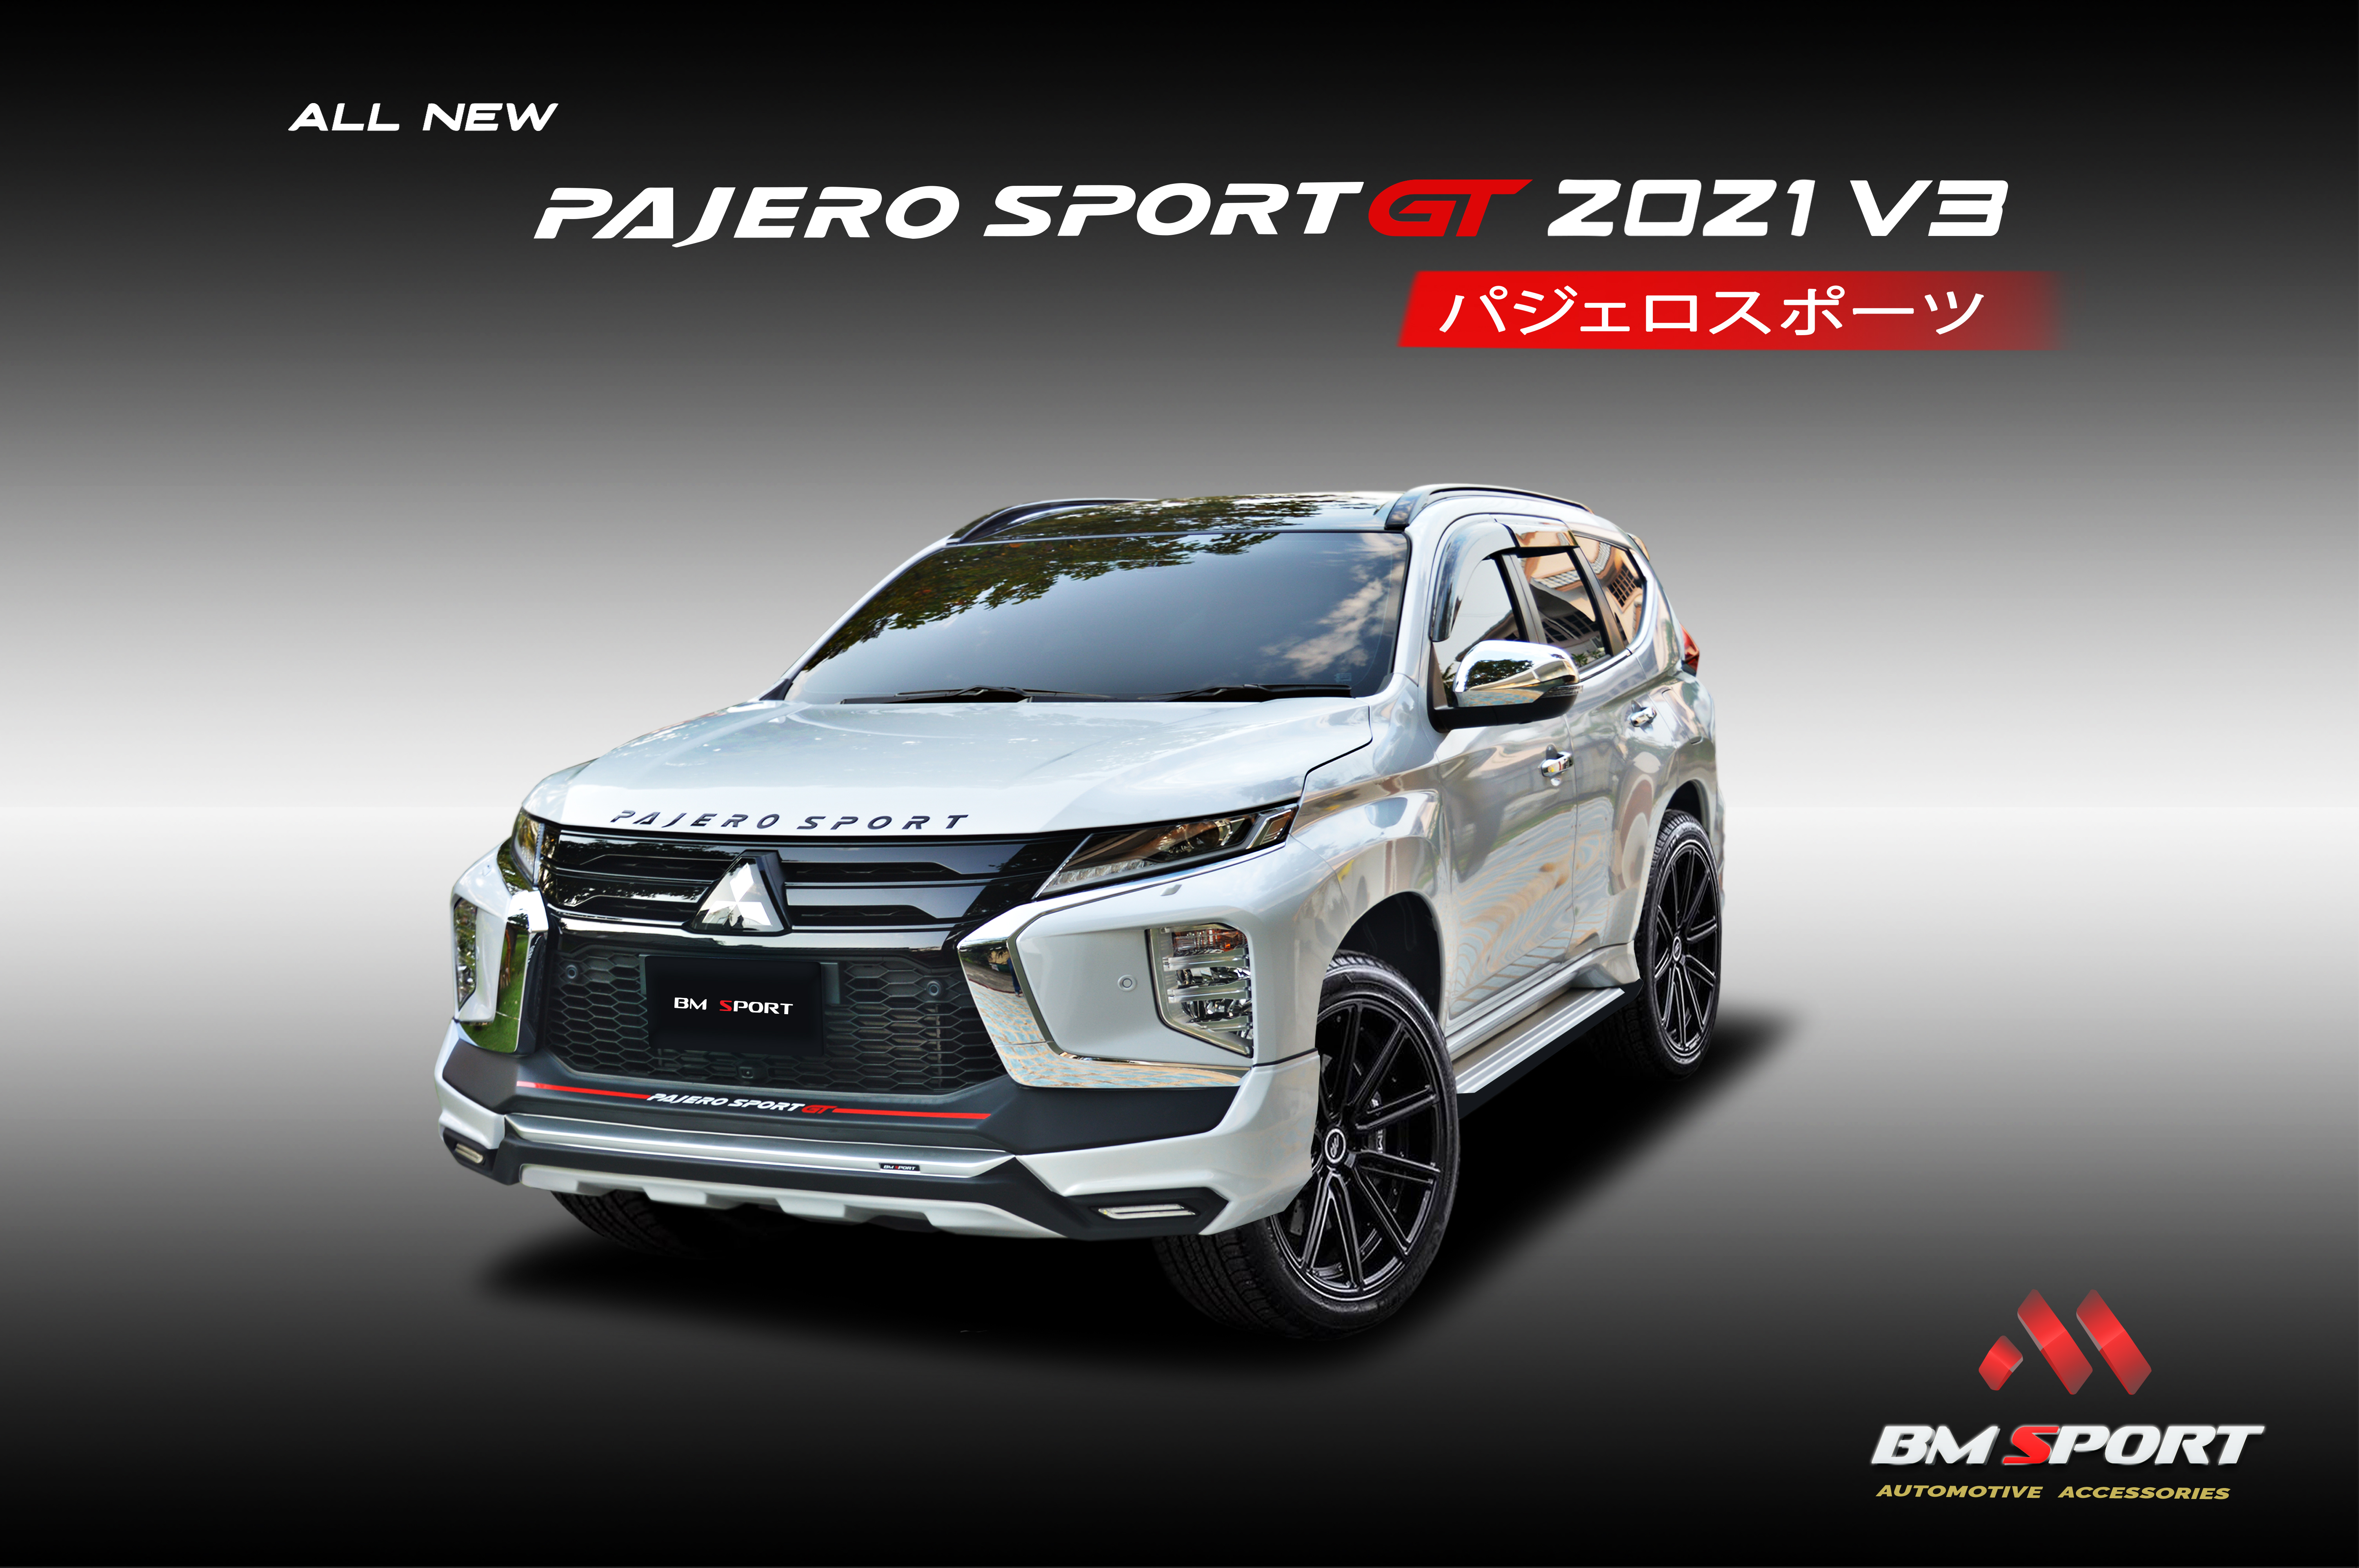  ชุดแต่งรอบคัน PAJERO GT 2021 V3